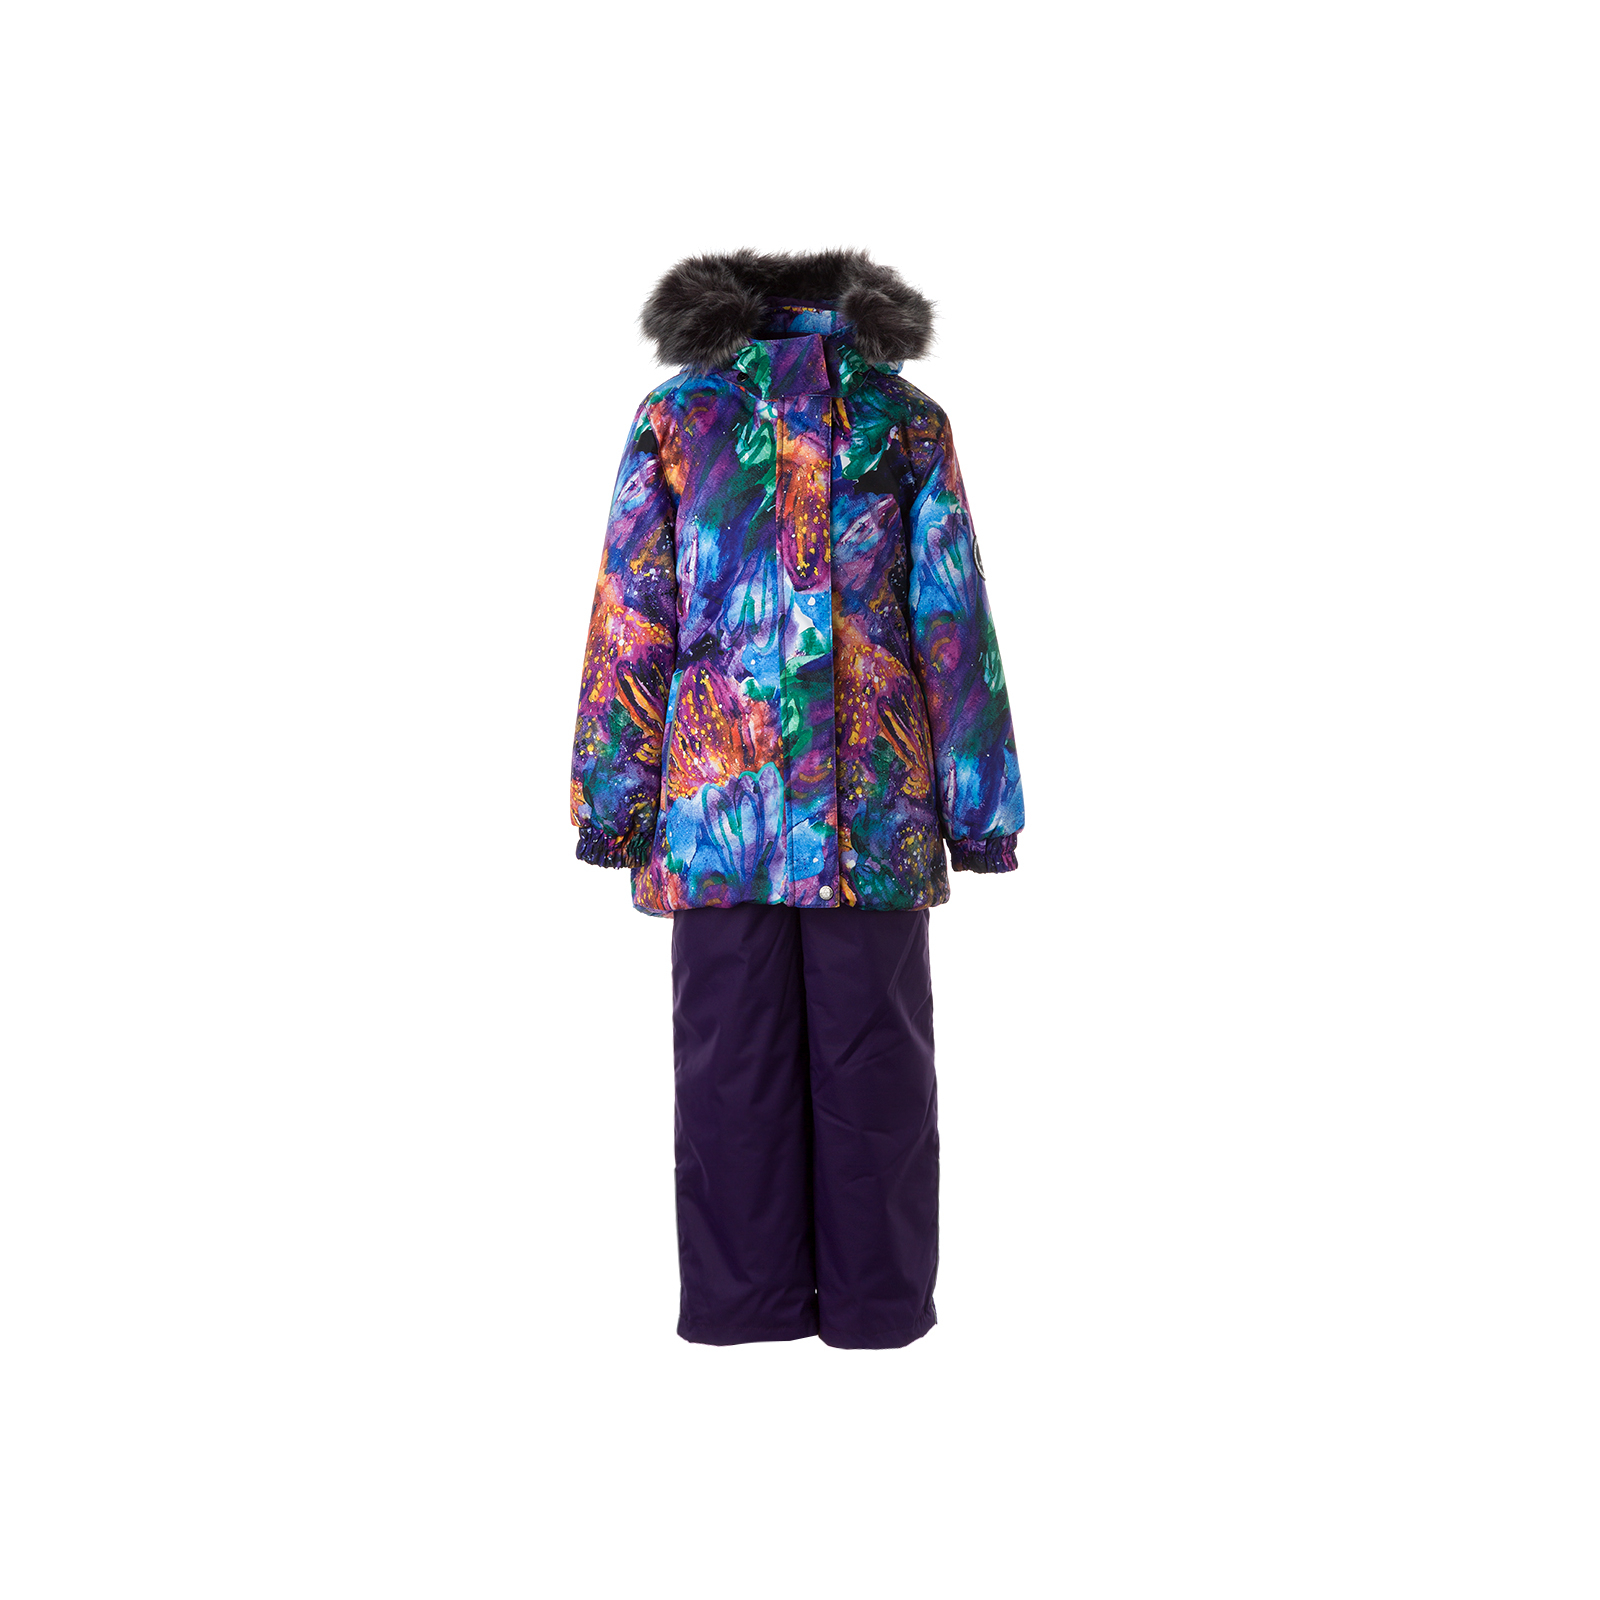 Комплект верхней одежды Huppa RENELY 2 41850230 пурпур с принтом/тёмно-лилoвый 122 (4741468979045)